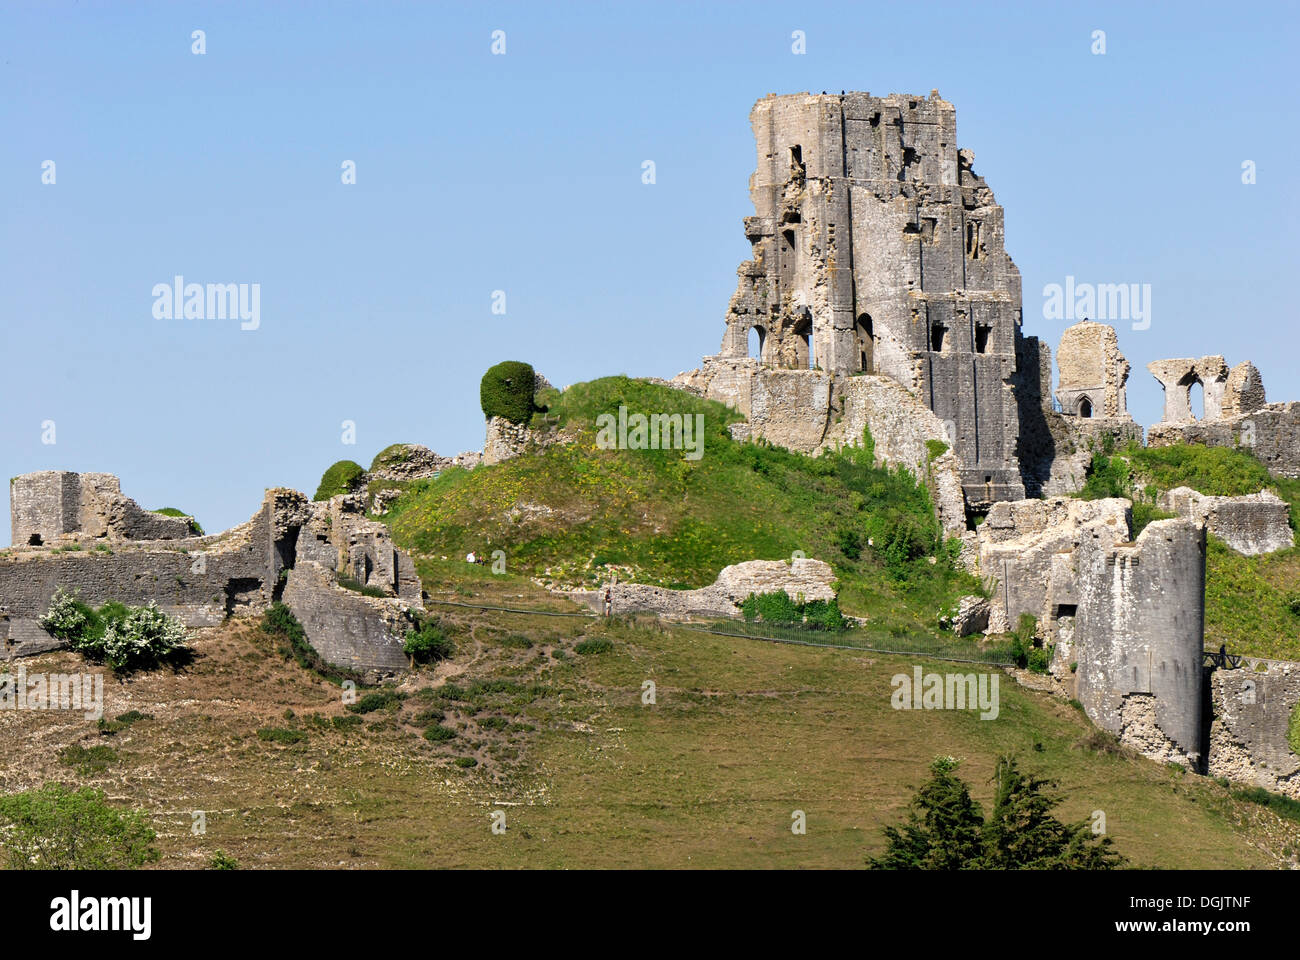 Ruines du château de Corfe, situé dans Village château de Corfe, Dorset, dans le sud de l'Angleterre, Angleterre, Royaume-Uni, Europe Banque D'Images